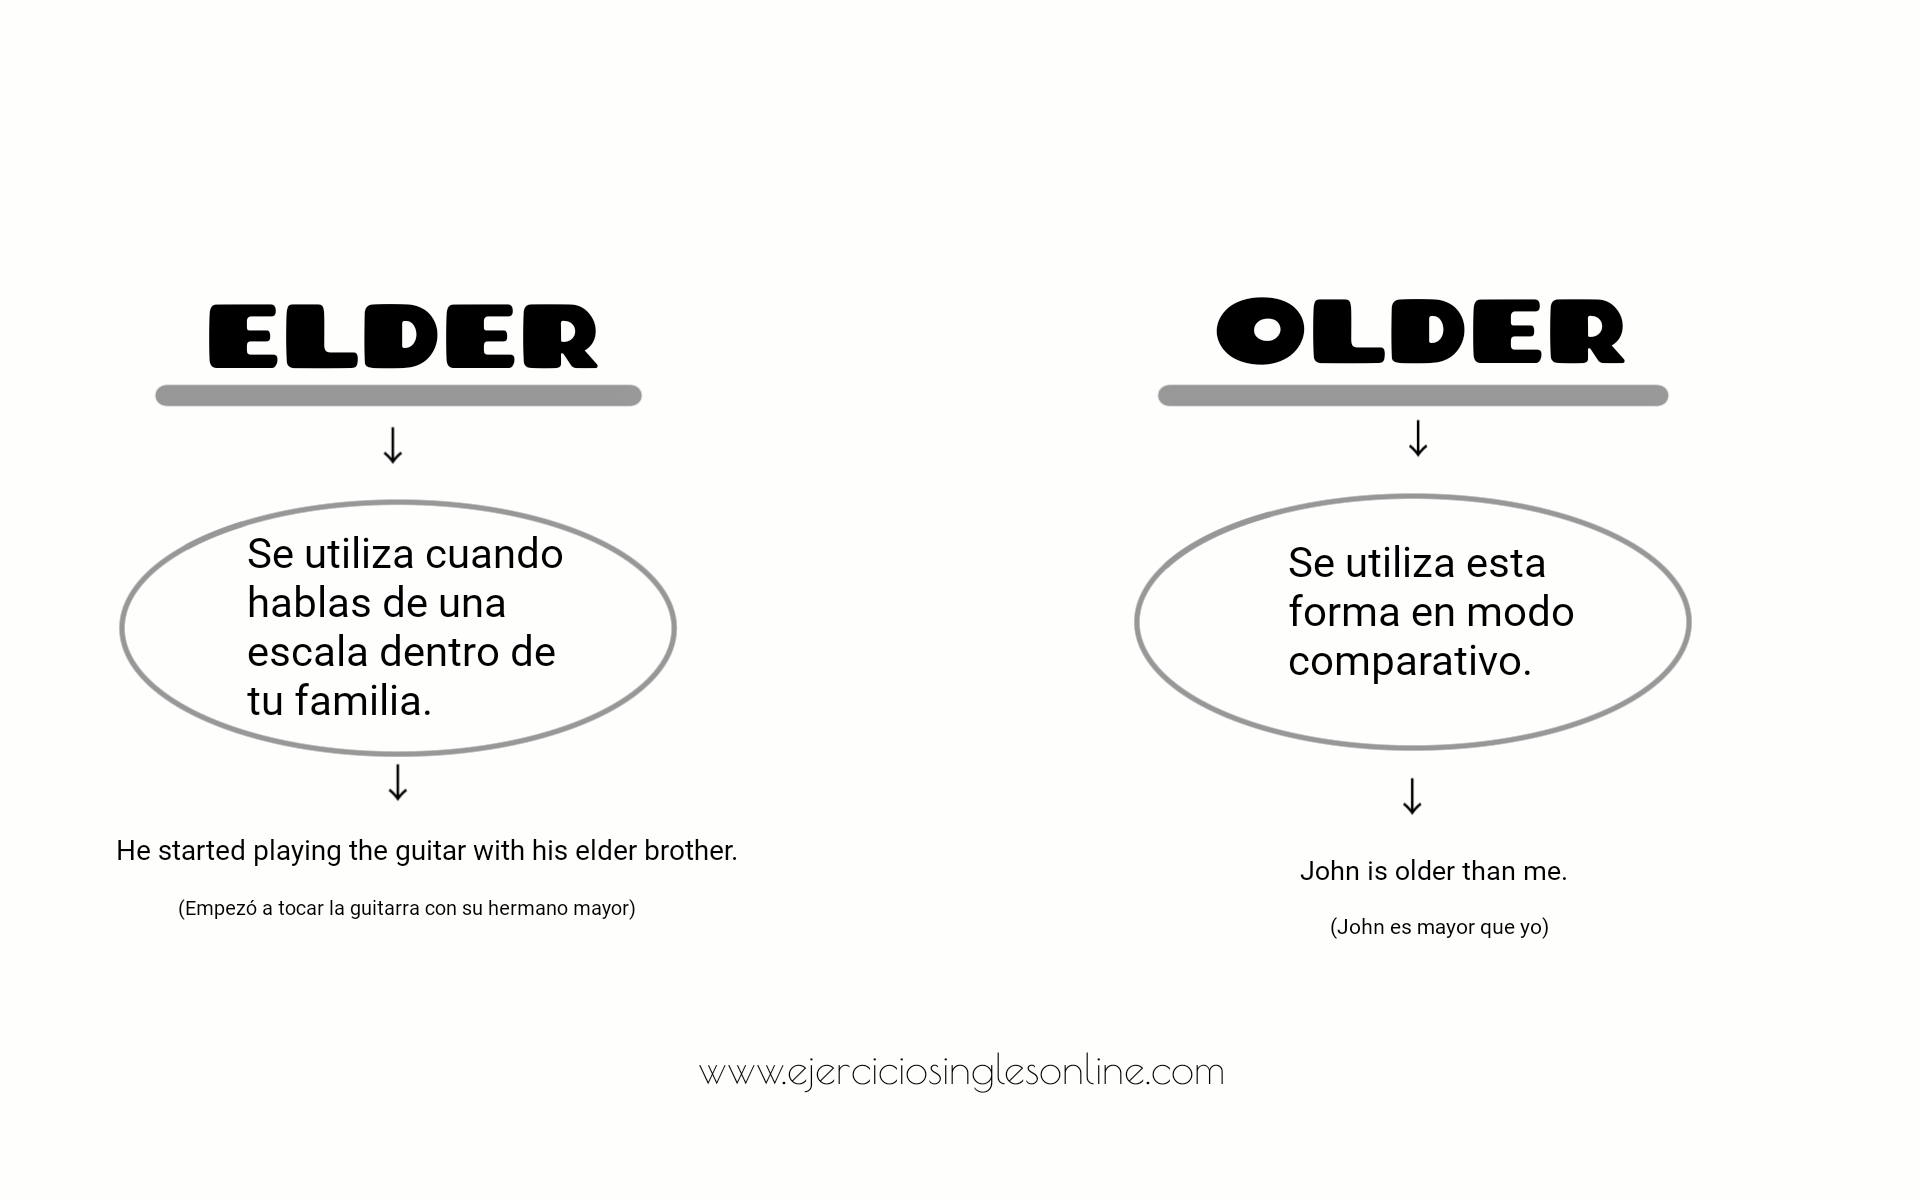 Elder brother or eldest. Older или Elder разница. Elder older различие. Old ELD разница. Older Elder правило.